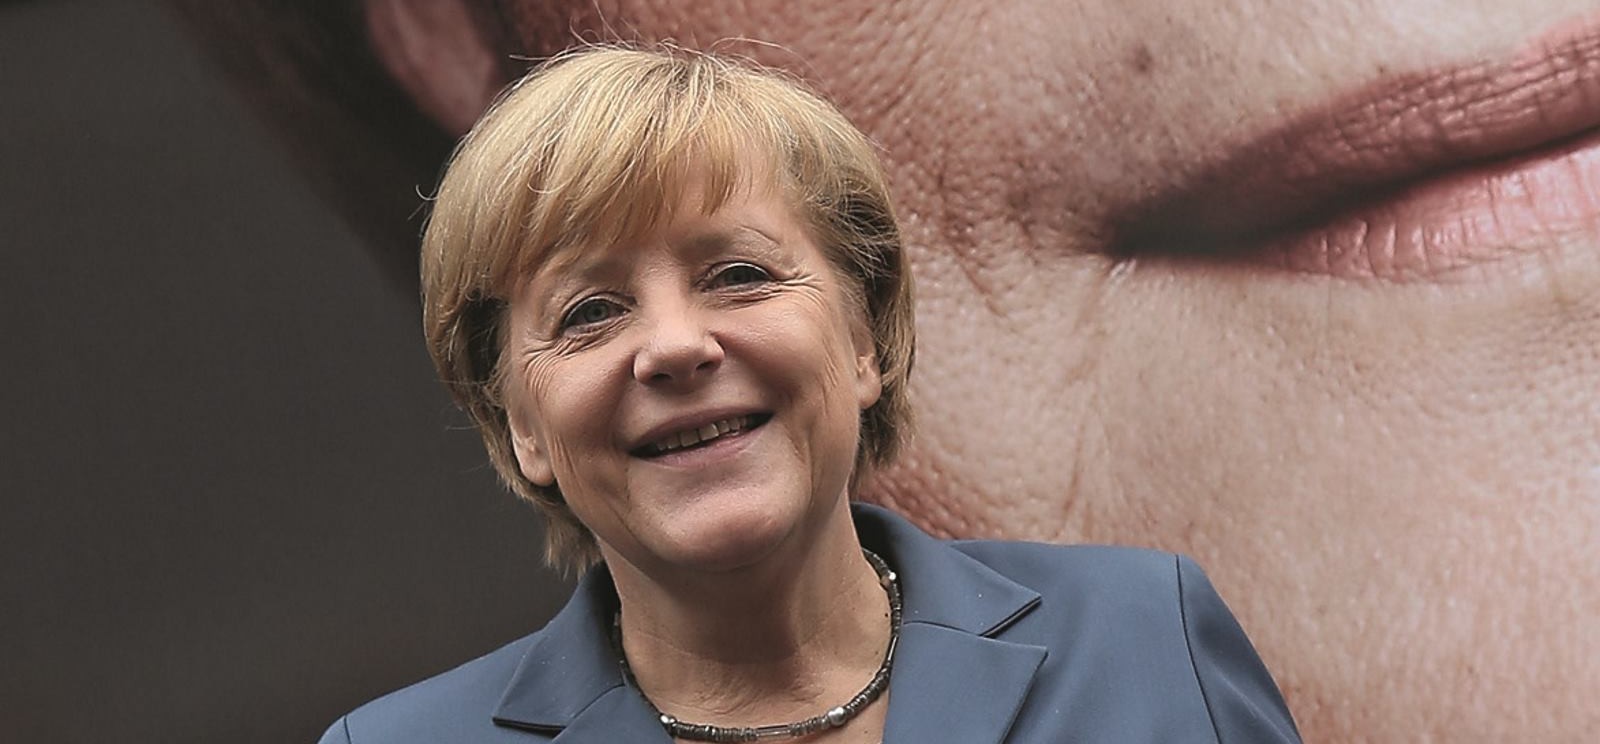 FELJTON: Nepoznati život Angele Merkel